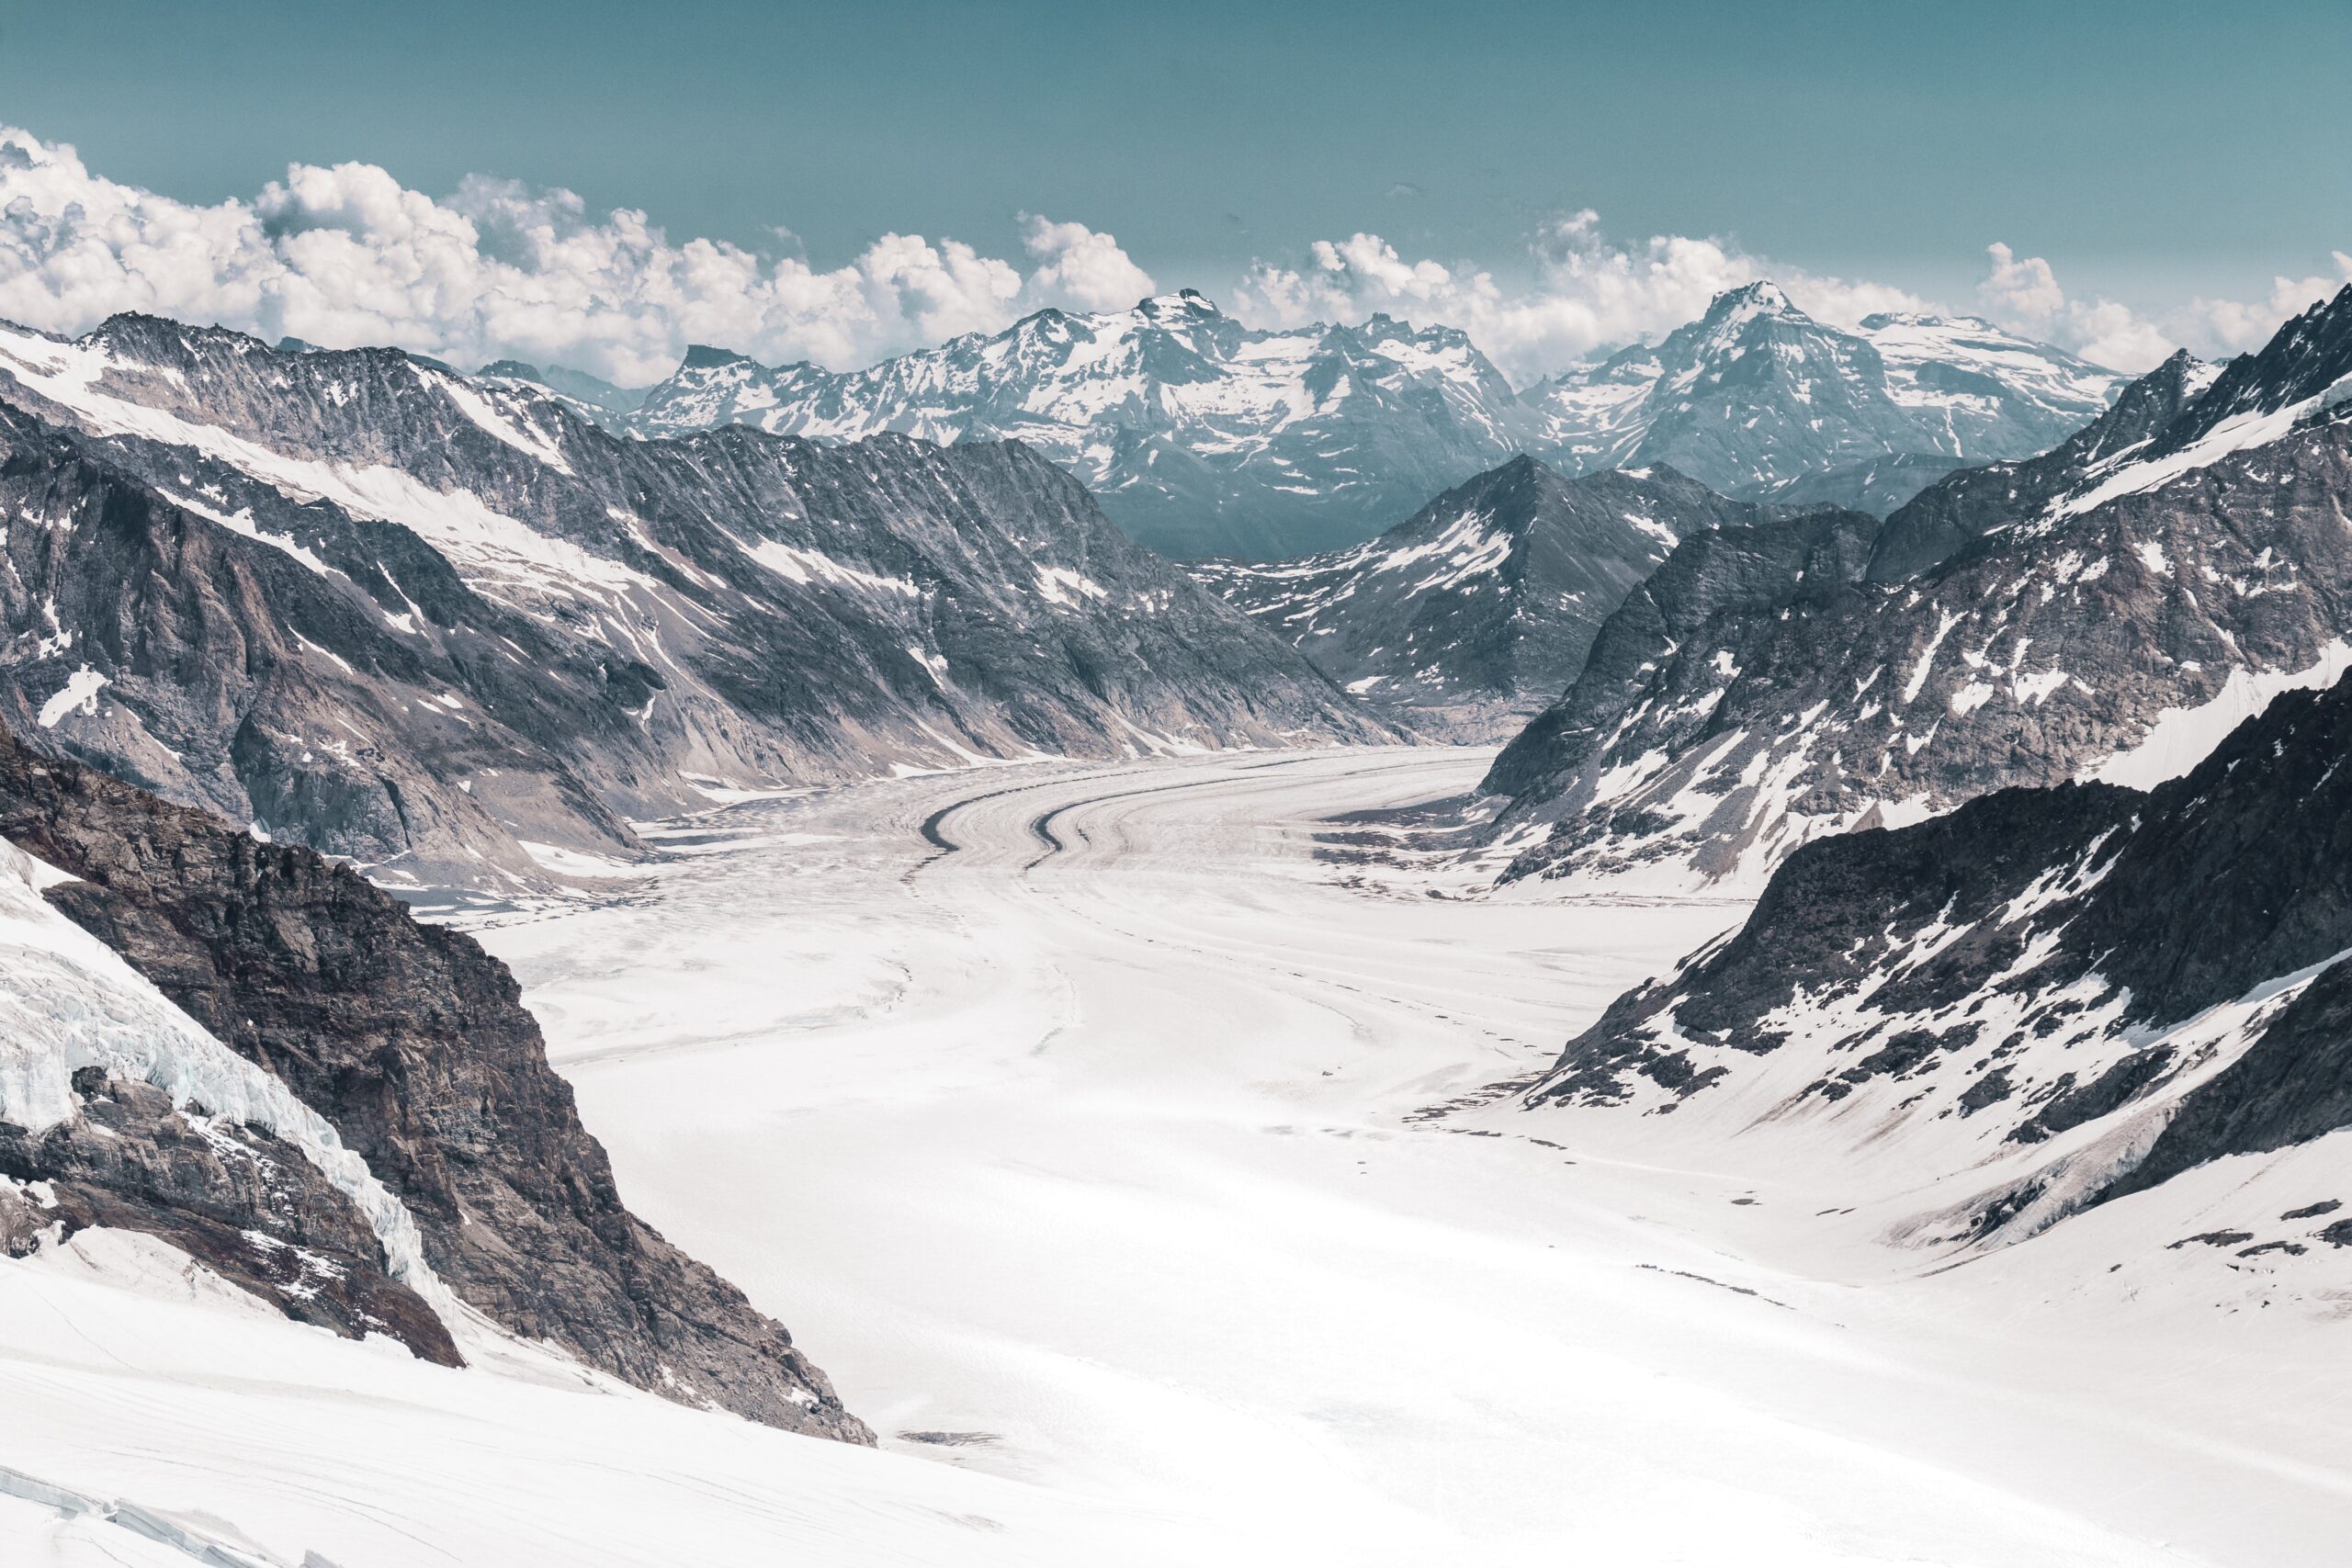 Aletsch Glacier